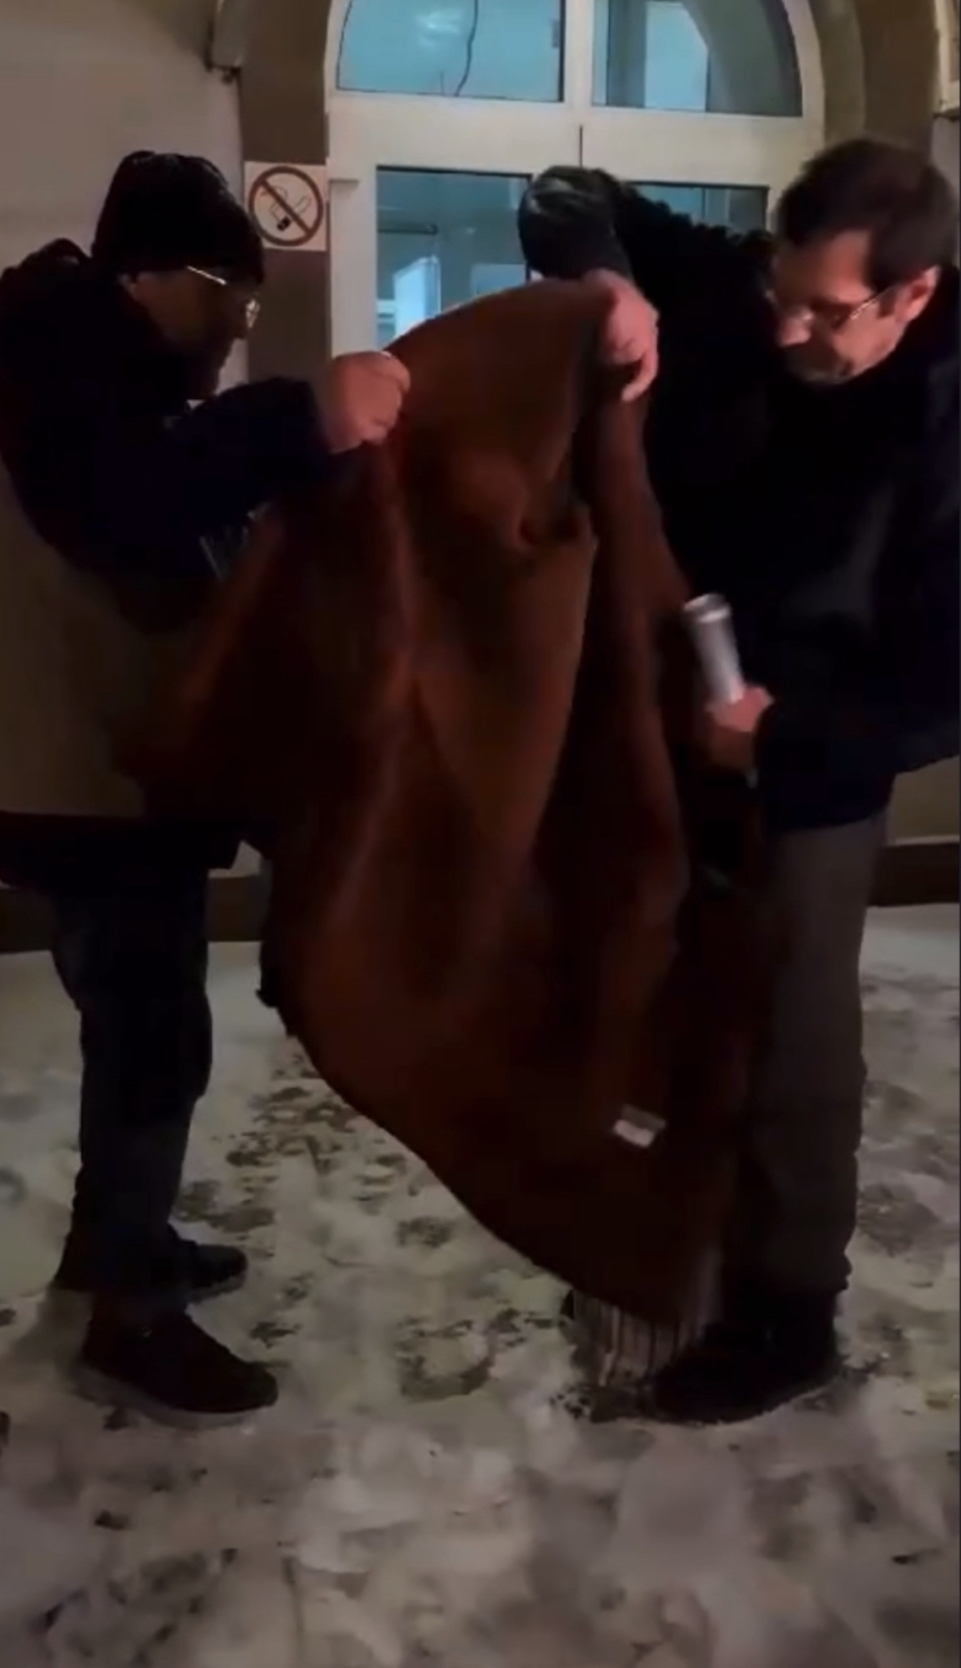 茨維特科夫（Alexander Tsvetkov）獲釋時正在下雪，親友送上厚外套給他保暖。facebook